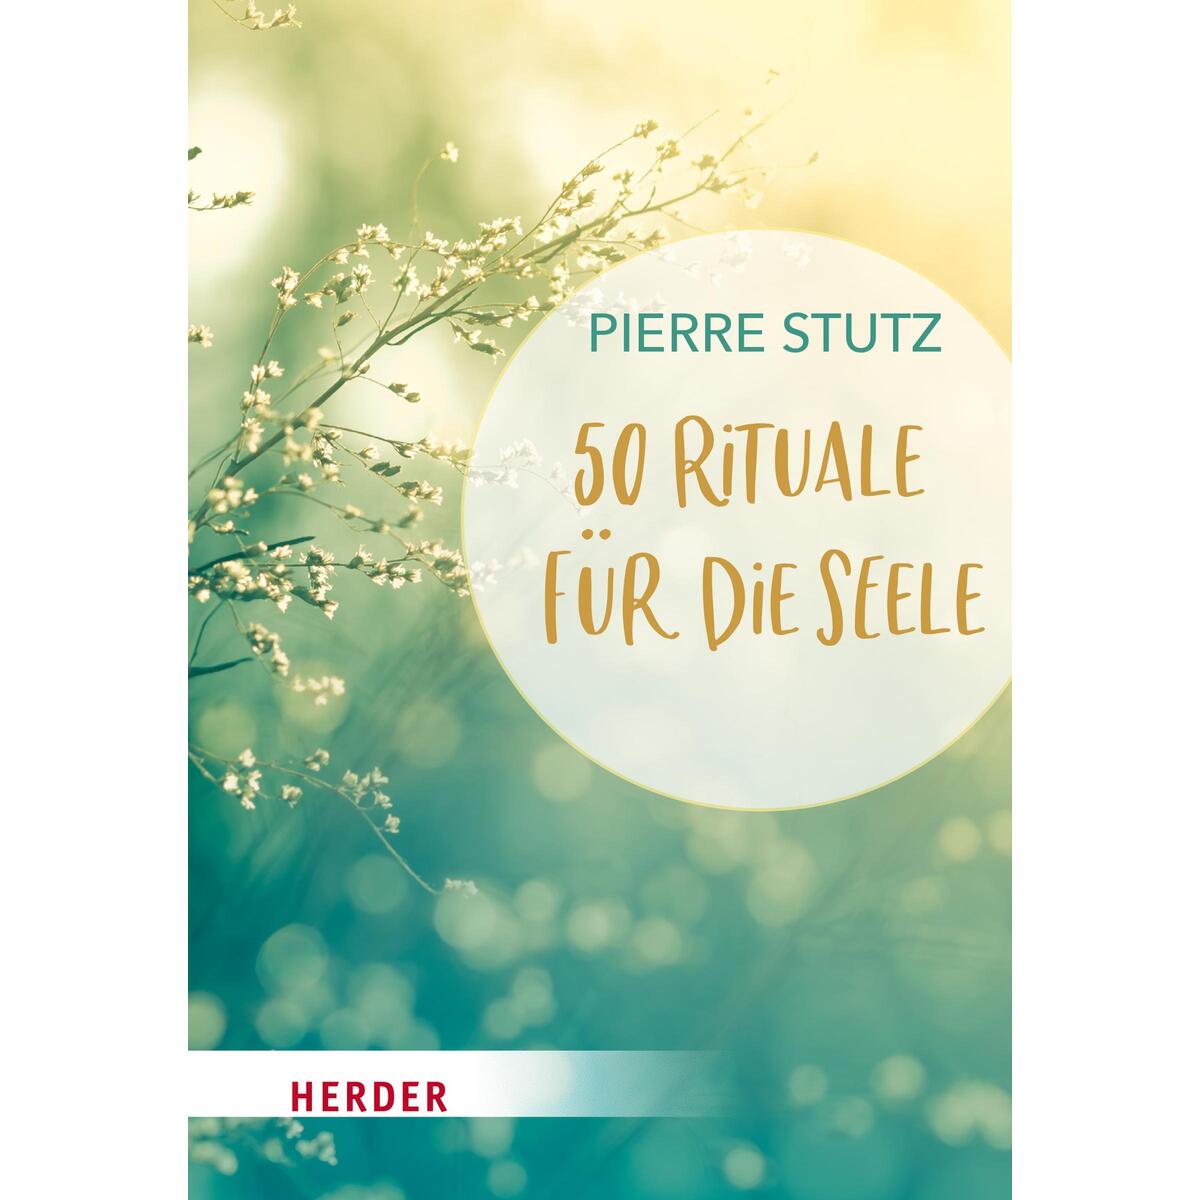 50 Rituale für die Seele von Herder Verlag GmbH